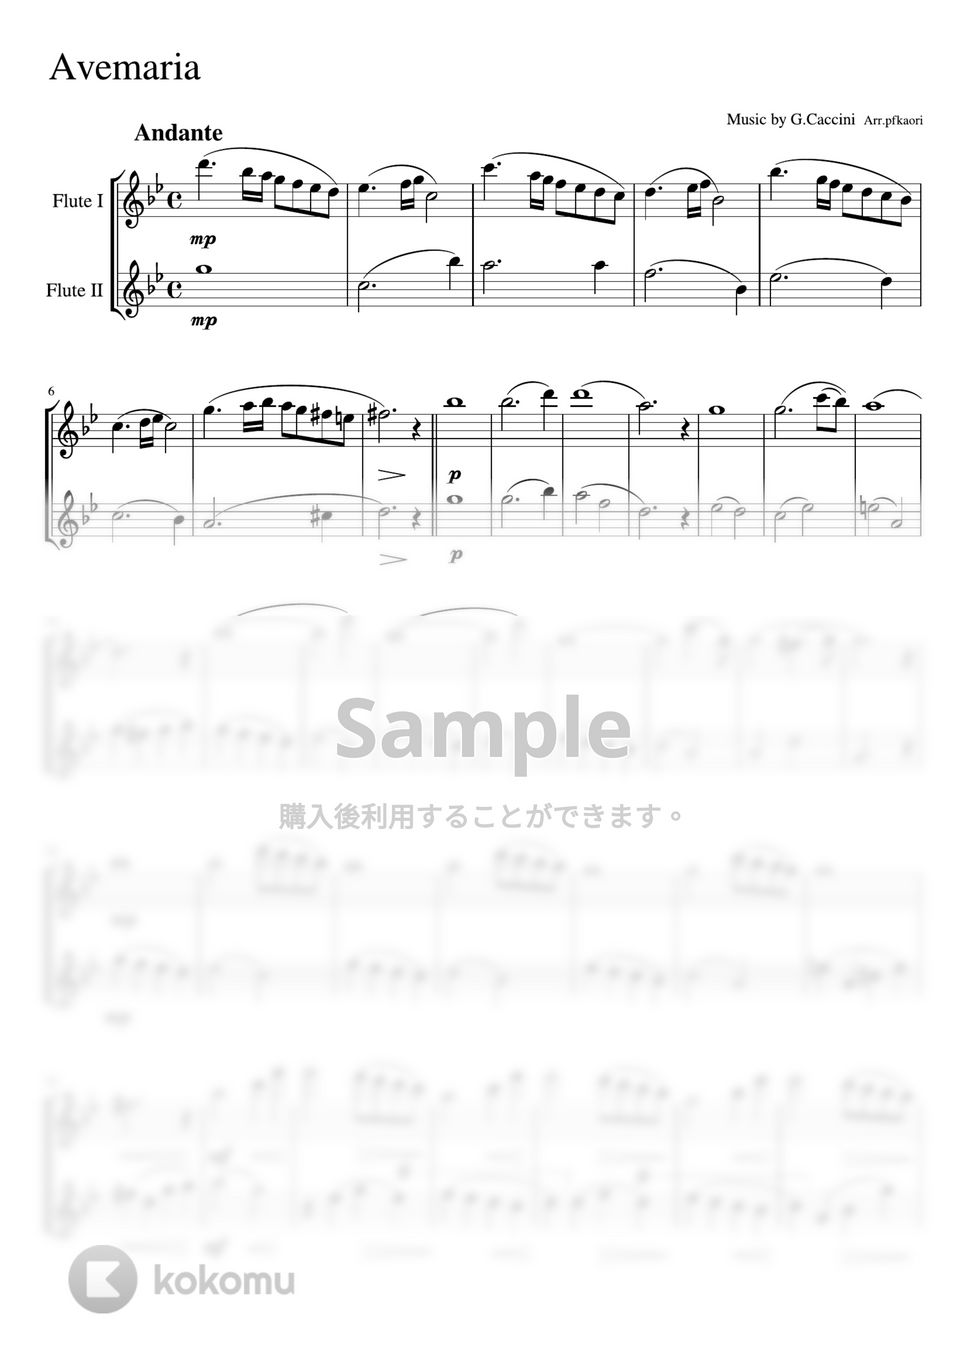 カッチーニ - アベマリア (フルート二重奏/無伴奏・スコア譜) by pfkaori